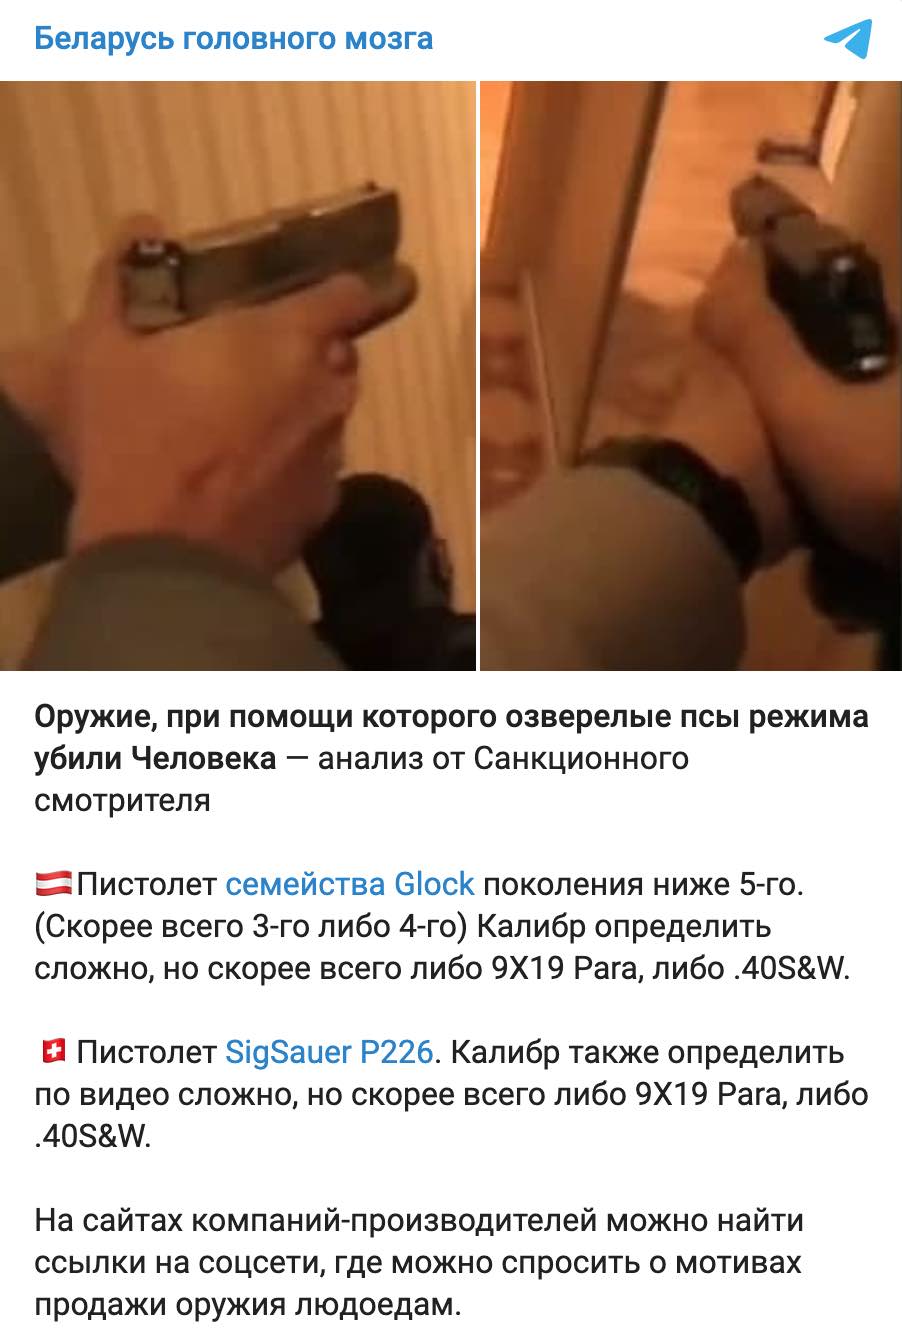 КДБ Білорусі вбив IT-шника в Мінську. Він відстрілювався і забрав з собою силовика: відео